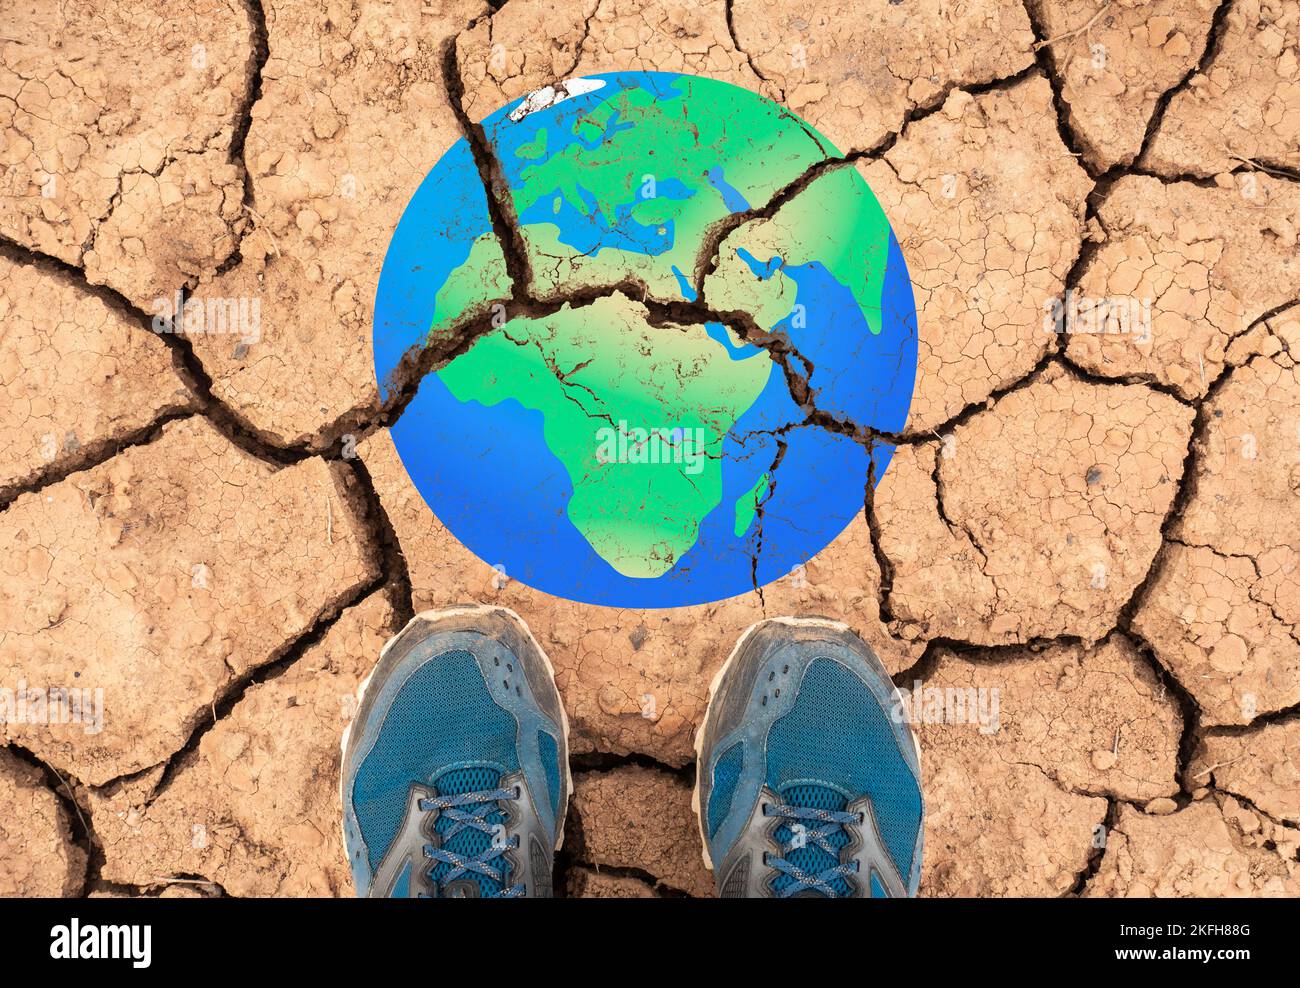 Riscaldamento globale, siccità, Africa, cambiamento climatico, COP 27, zero netto, temperature in aumento... concetto Foto Stock